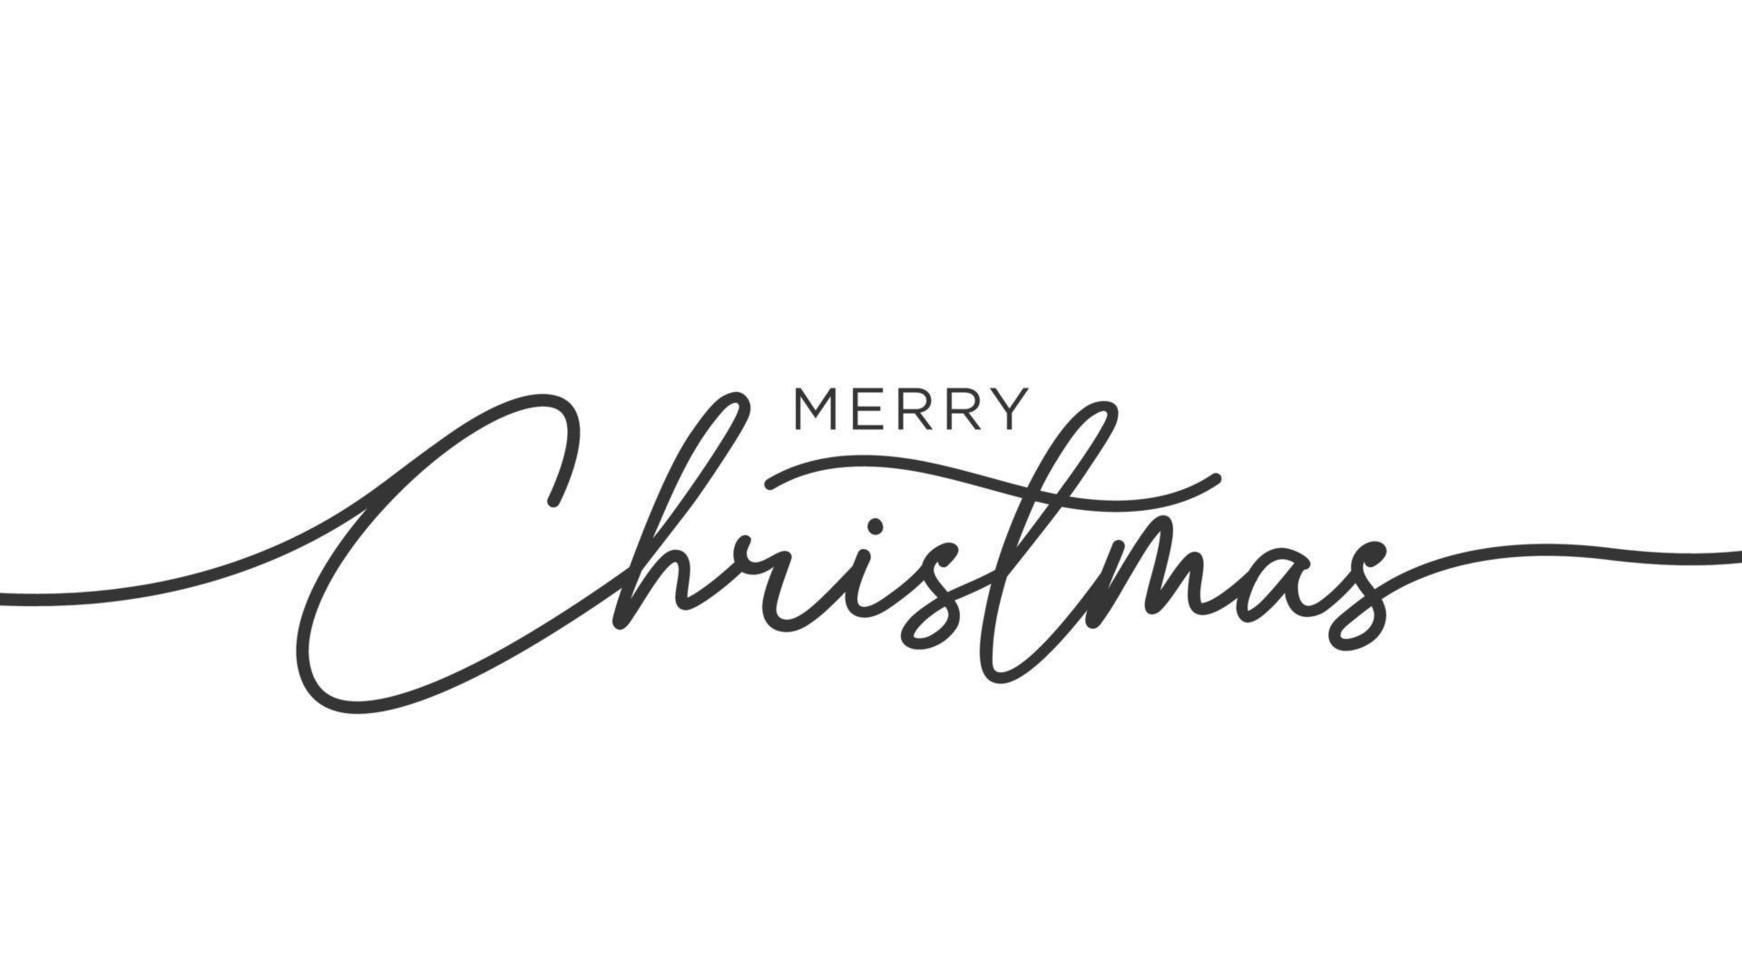 Letras de pincel de vector de feliz Navidad. caligrafía de pincel moderno dibujado a mano aislada sobre fondo blanco. Ilustración de tinta de vector de Navidad. Tipografía creativa para tarjetas de felicitación navideñas, banner.